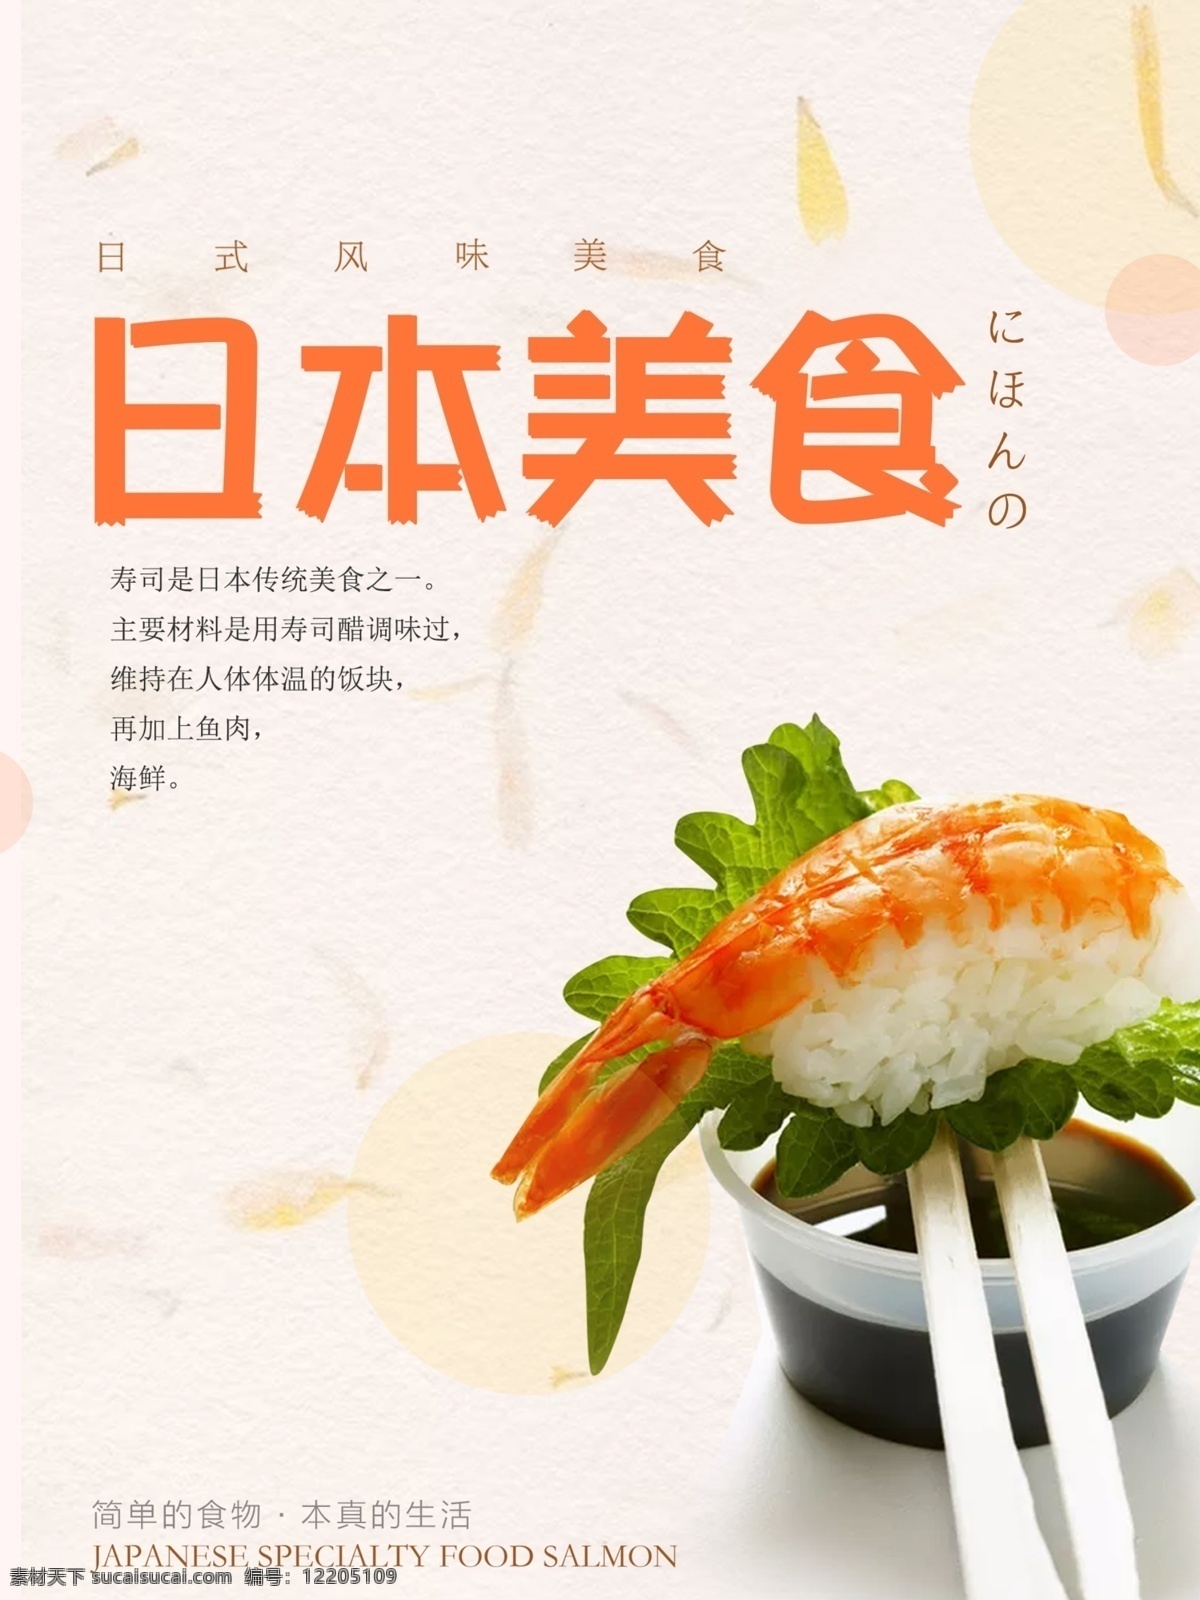 日本 美食 寿司 海报 日本美食寿司 寿司宣传海报 简单的食物 本真的生活 日式风味美食 日本美食海报 美食宣传海报 日本美食 美食海报 日本寿司 寿司海报 海报素材